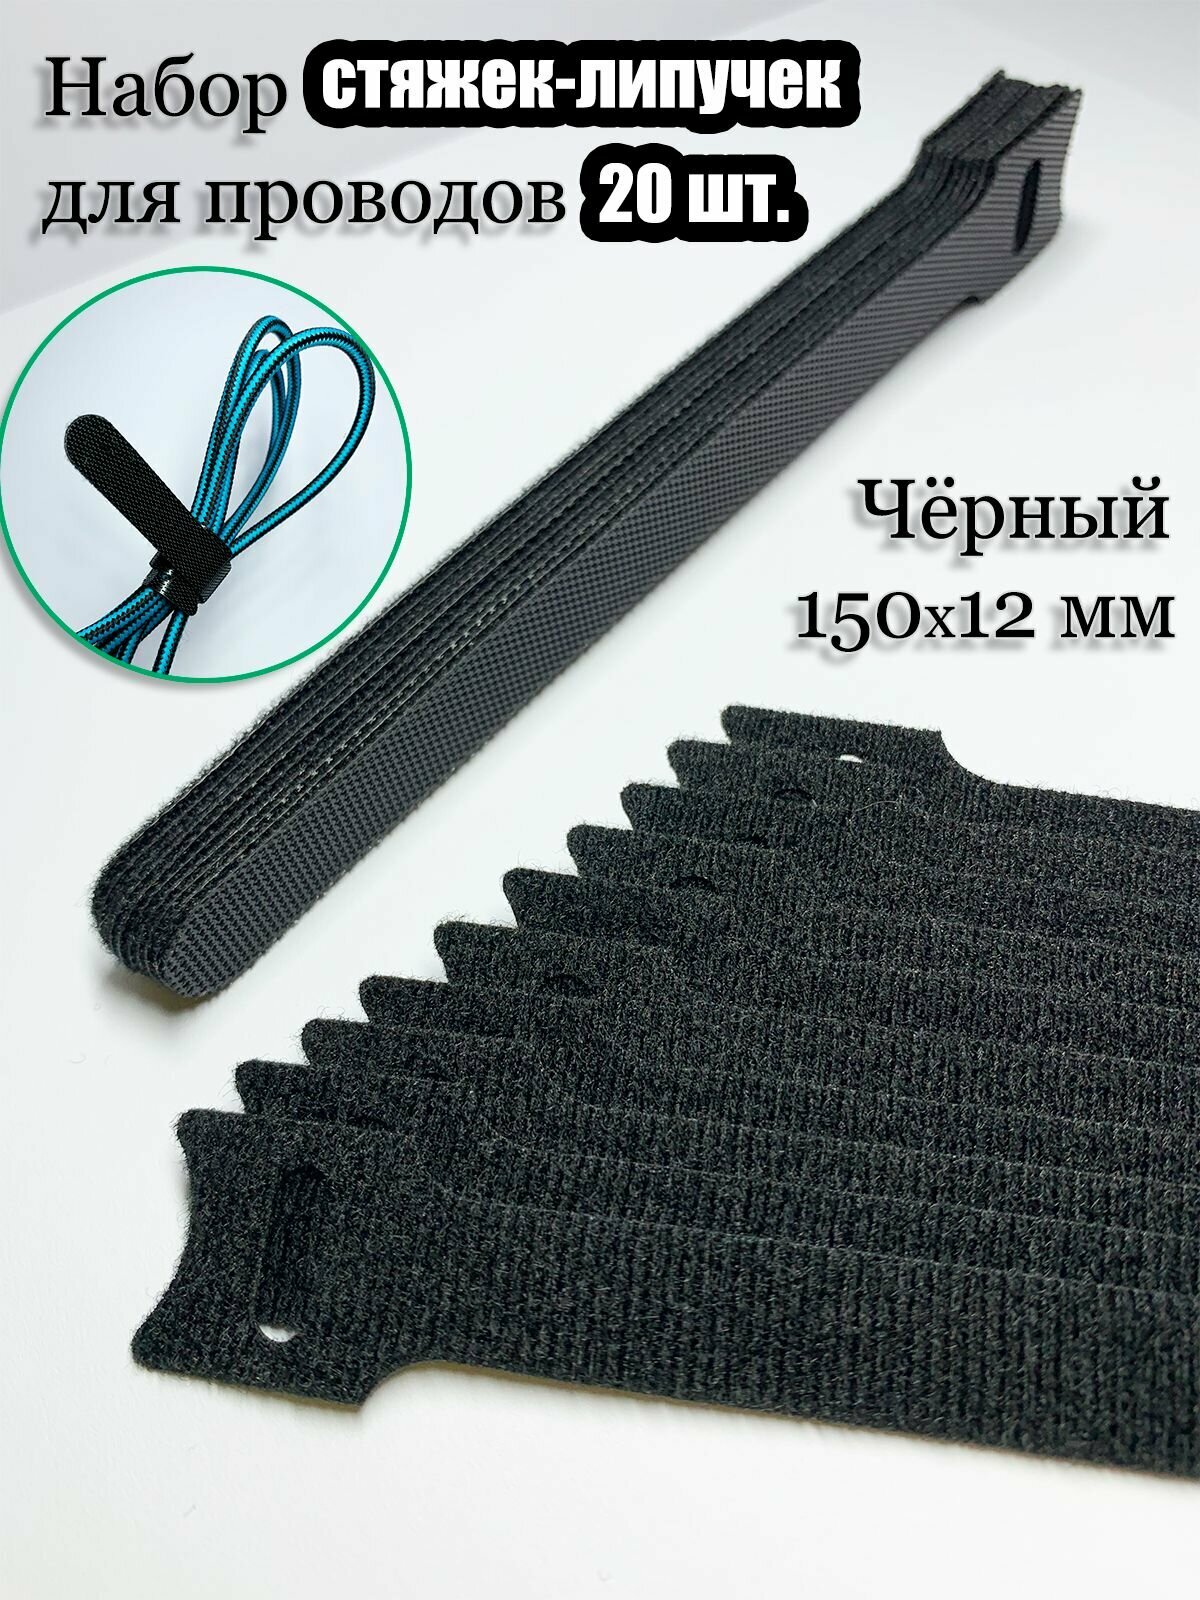 Многоразовая стяжка-липучка для проводов и кабелей 150х12 мм. Цвет черный. 20 шт.